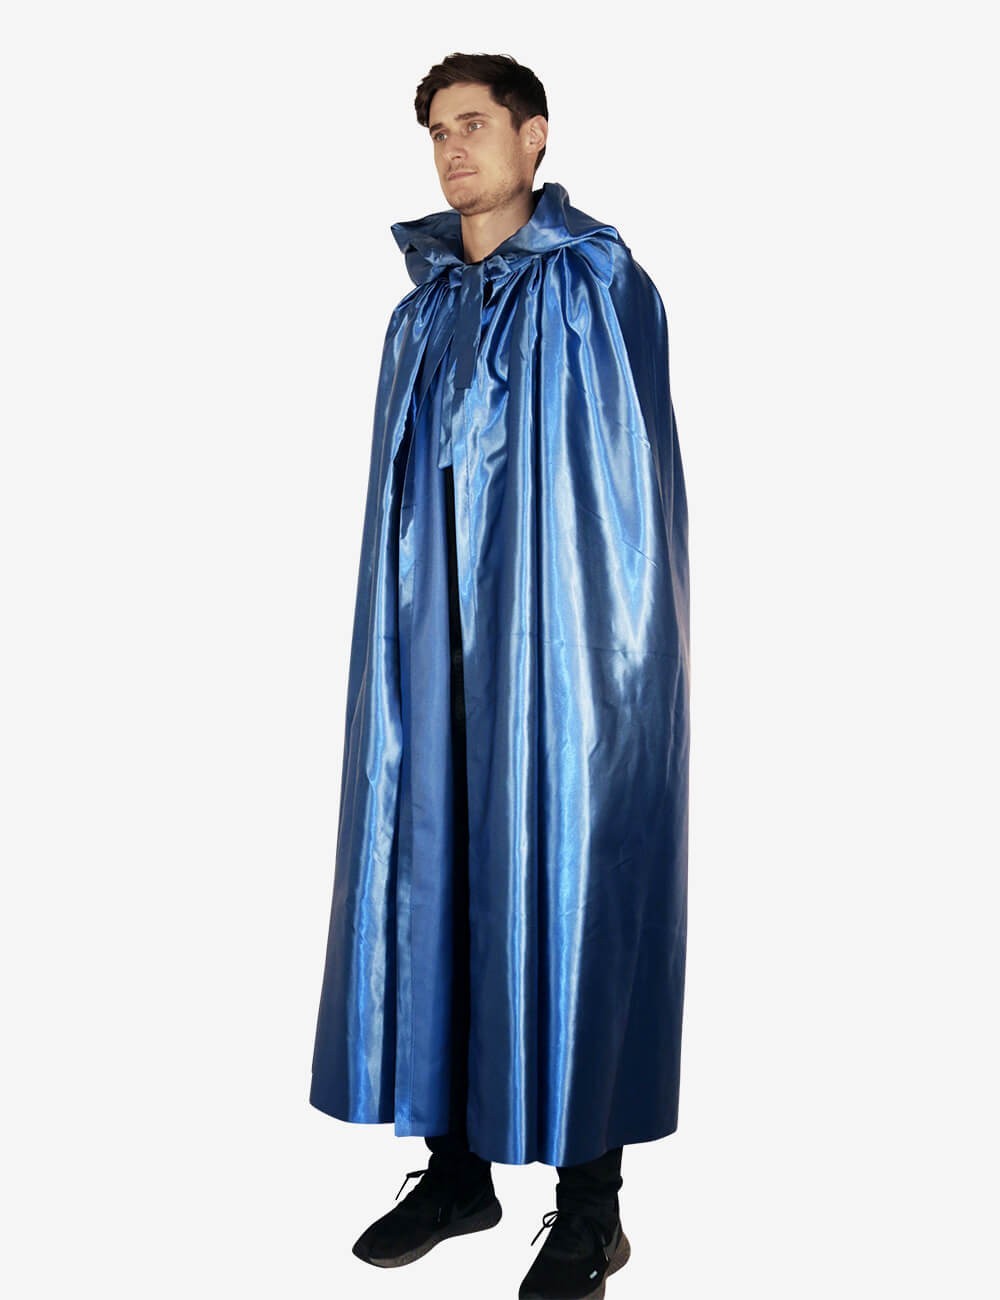 vestaglie e feste mantello blu per Halloween ITODA Mantello con cappuccio e paillettes mantello medievale con cappuccio e paillettes 